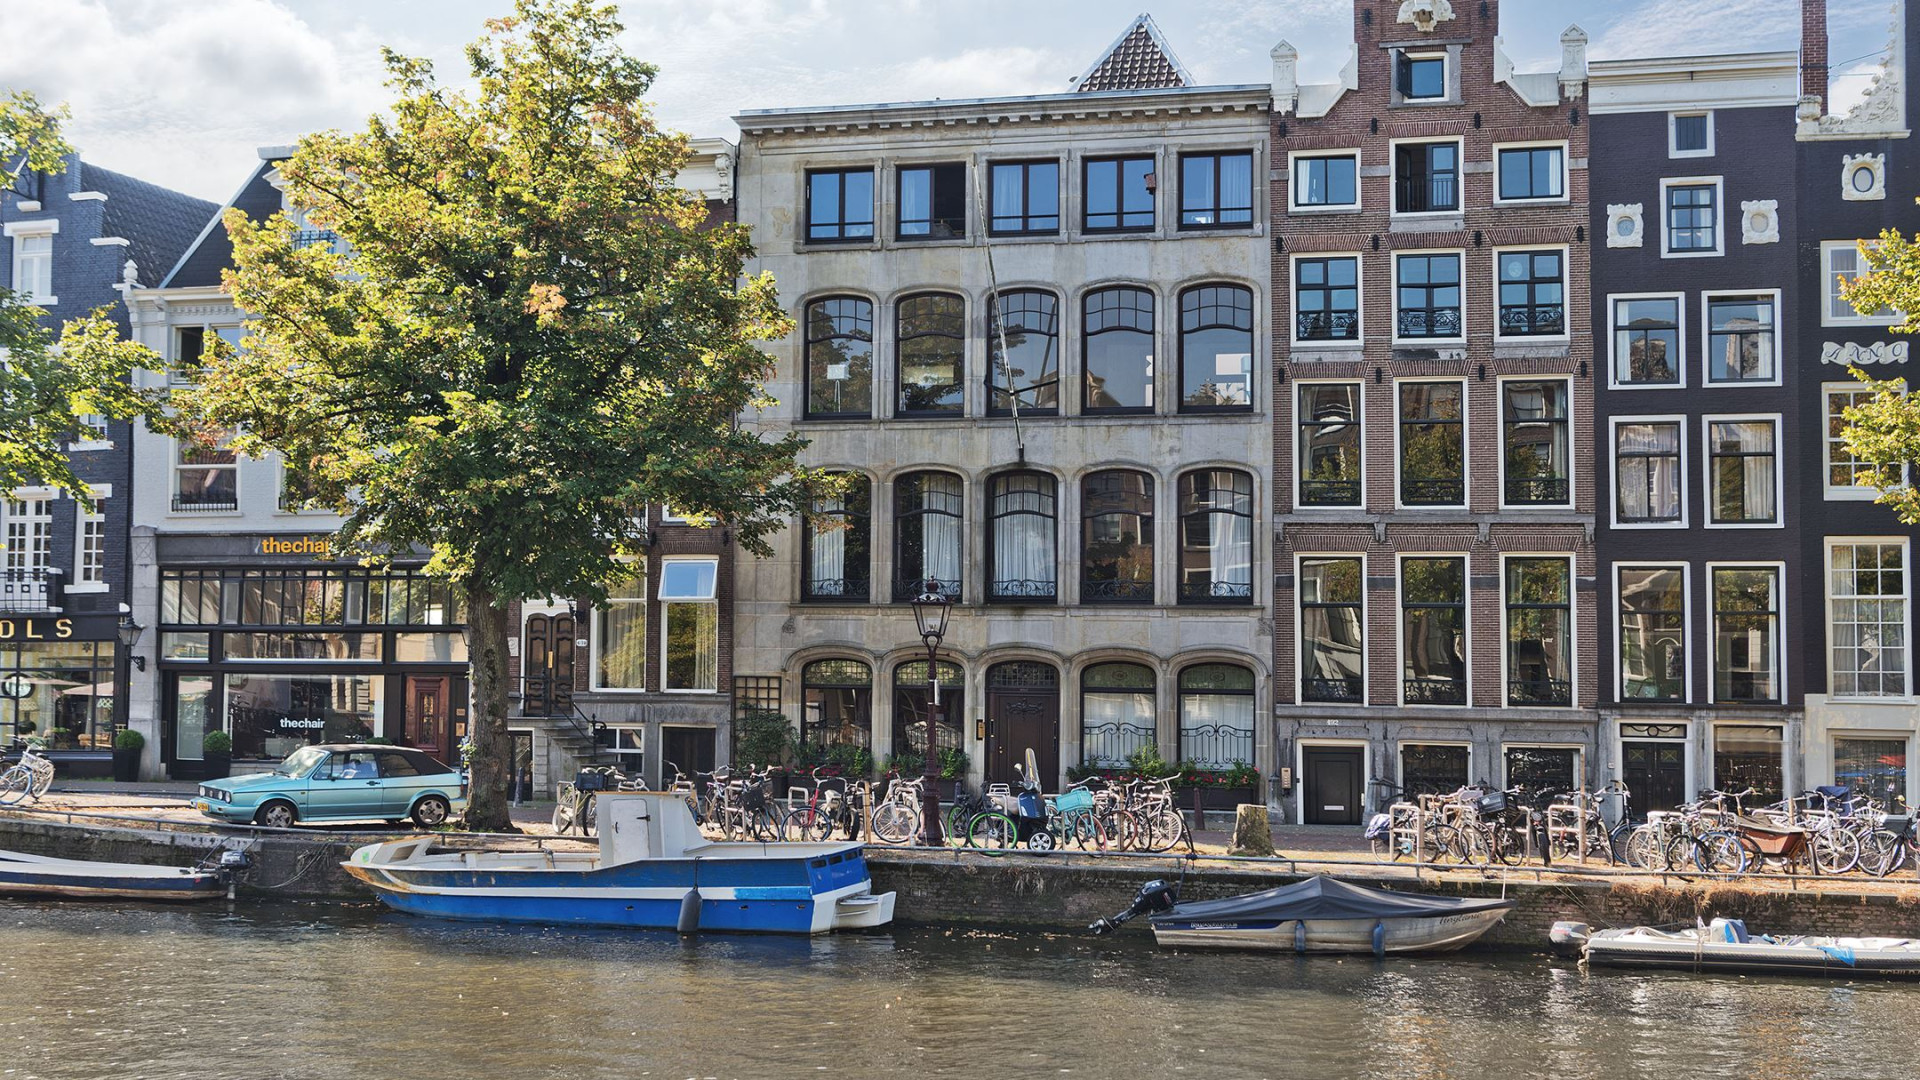 Koopt Matthijs van Nieuwkerk dit grachtenpand in Amsterdam? Zie foto's 2